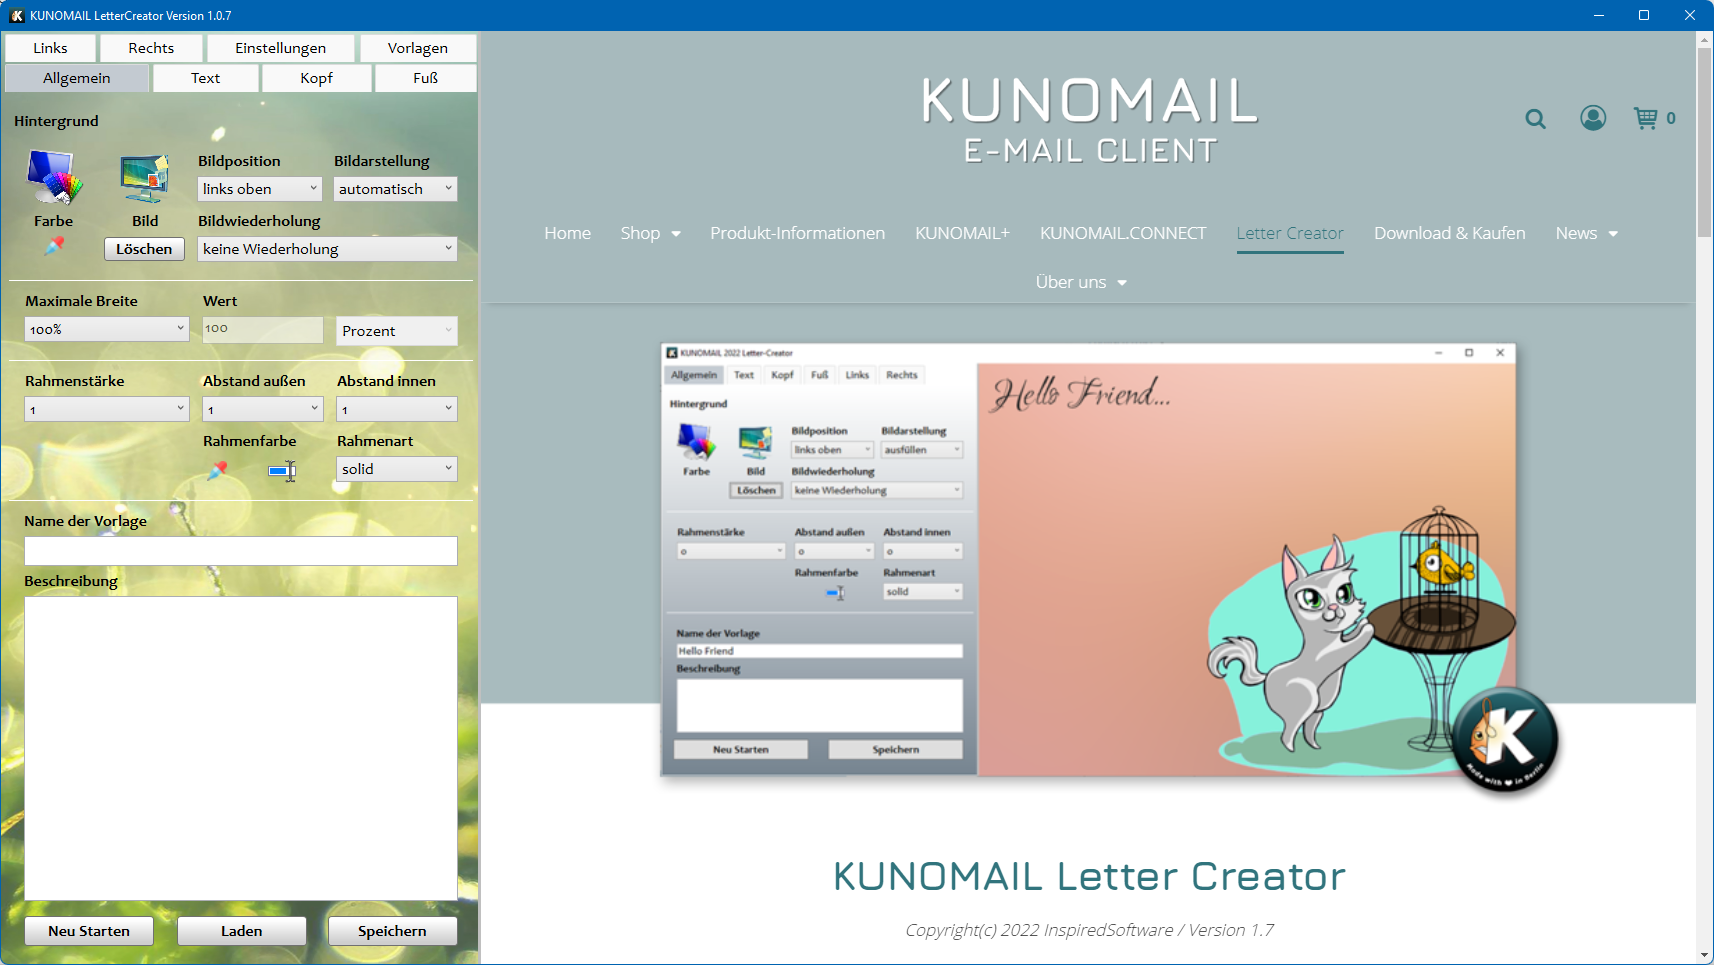 KUNOMAIL Letter Creator